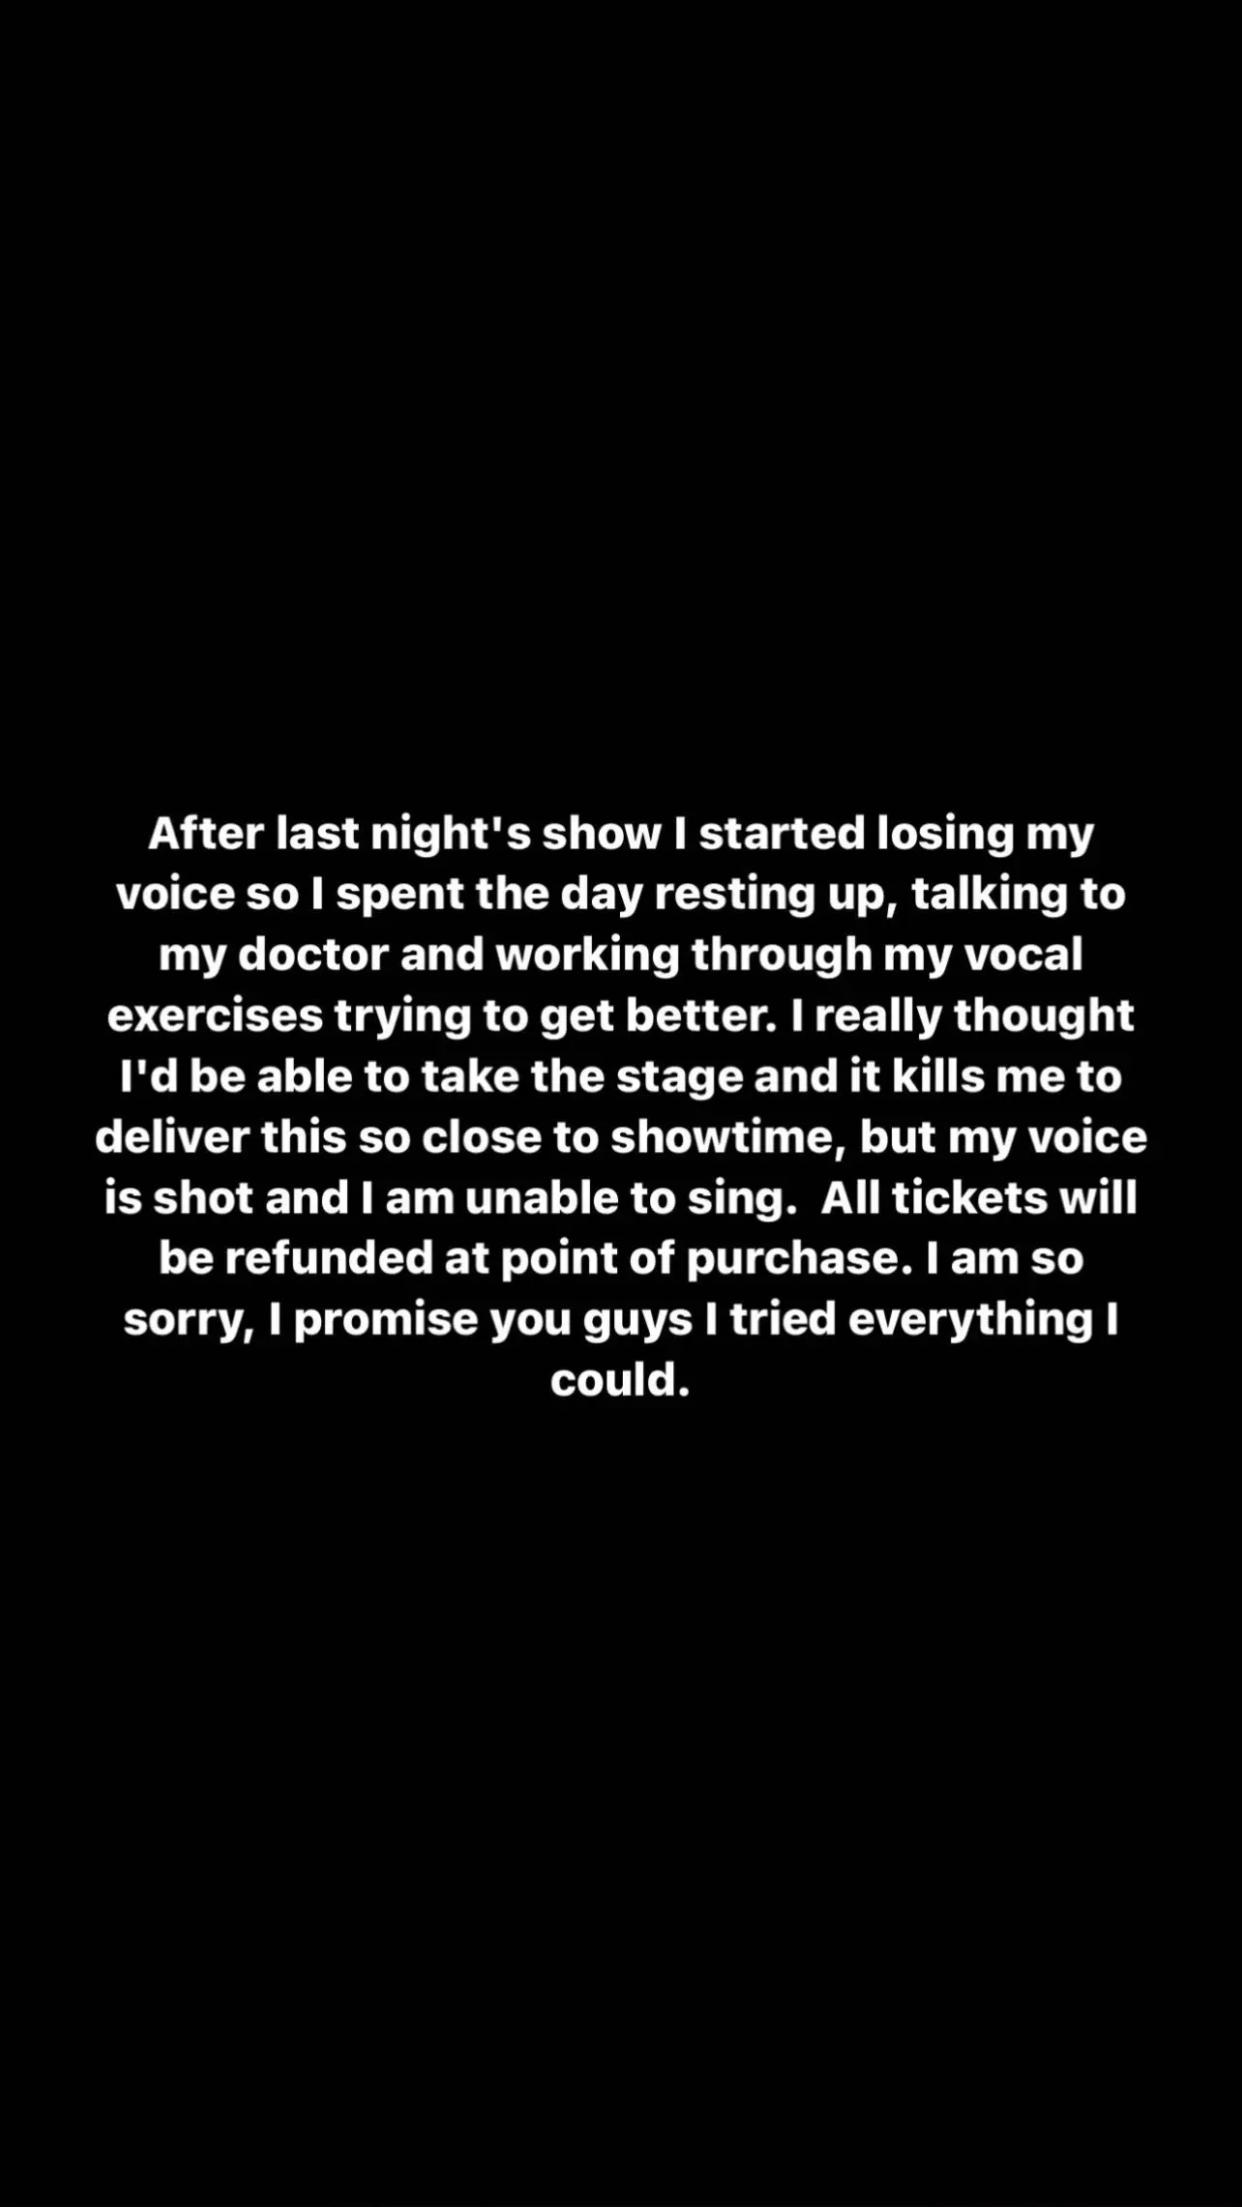 Morgan Wallen statement on concert cancellation